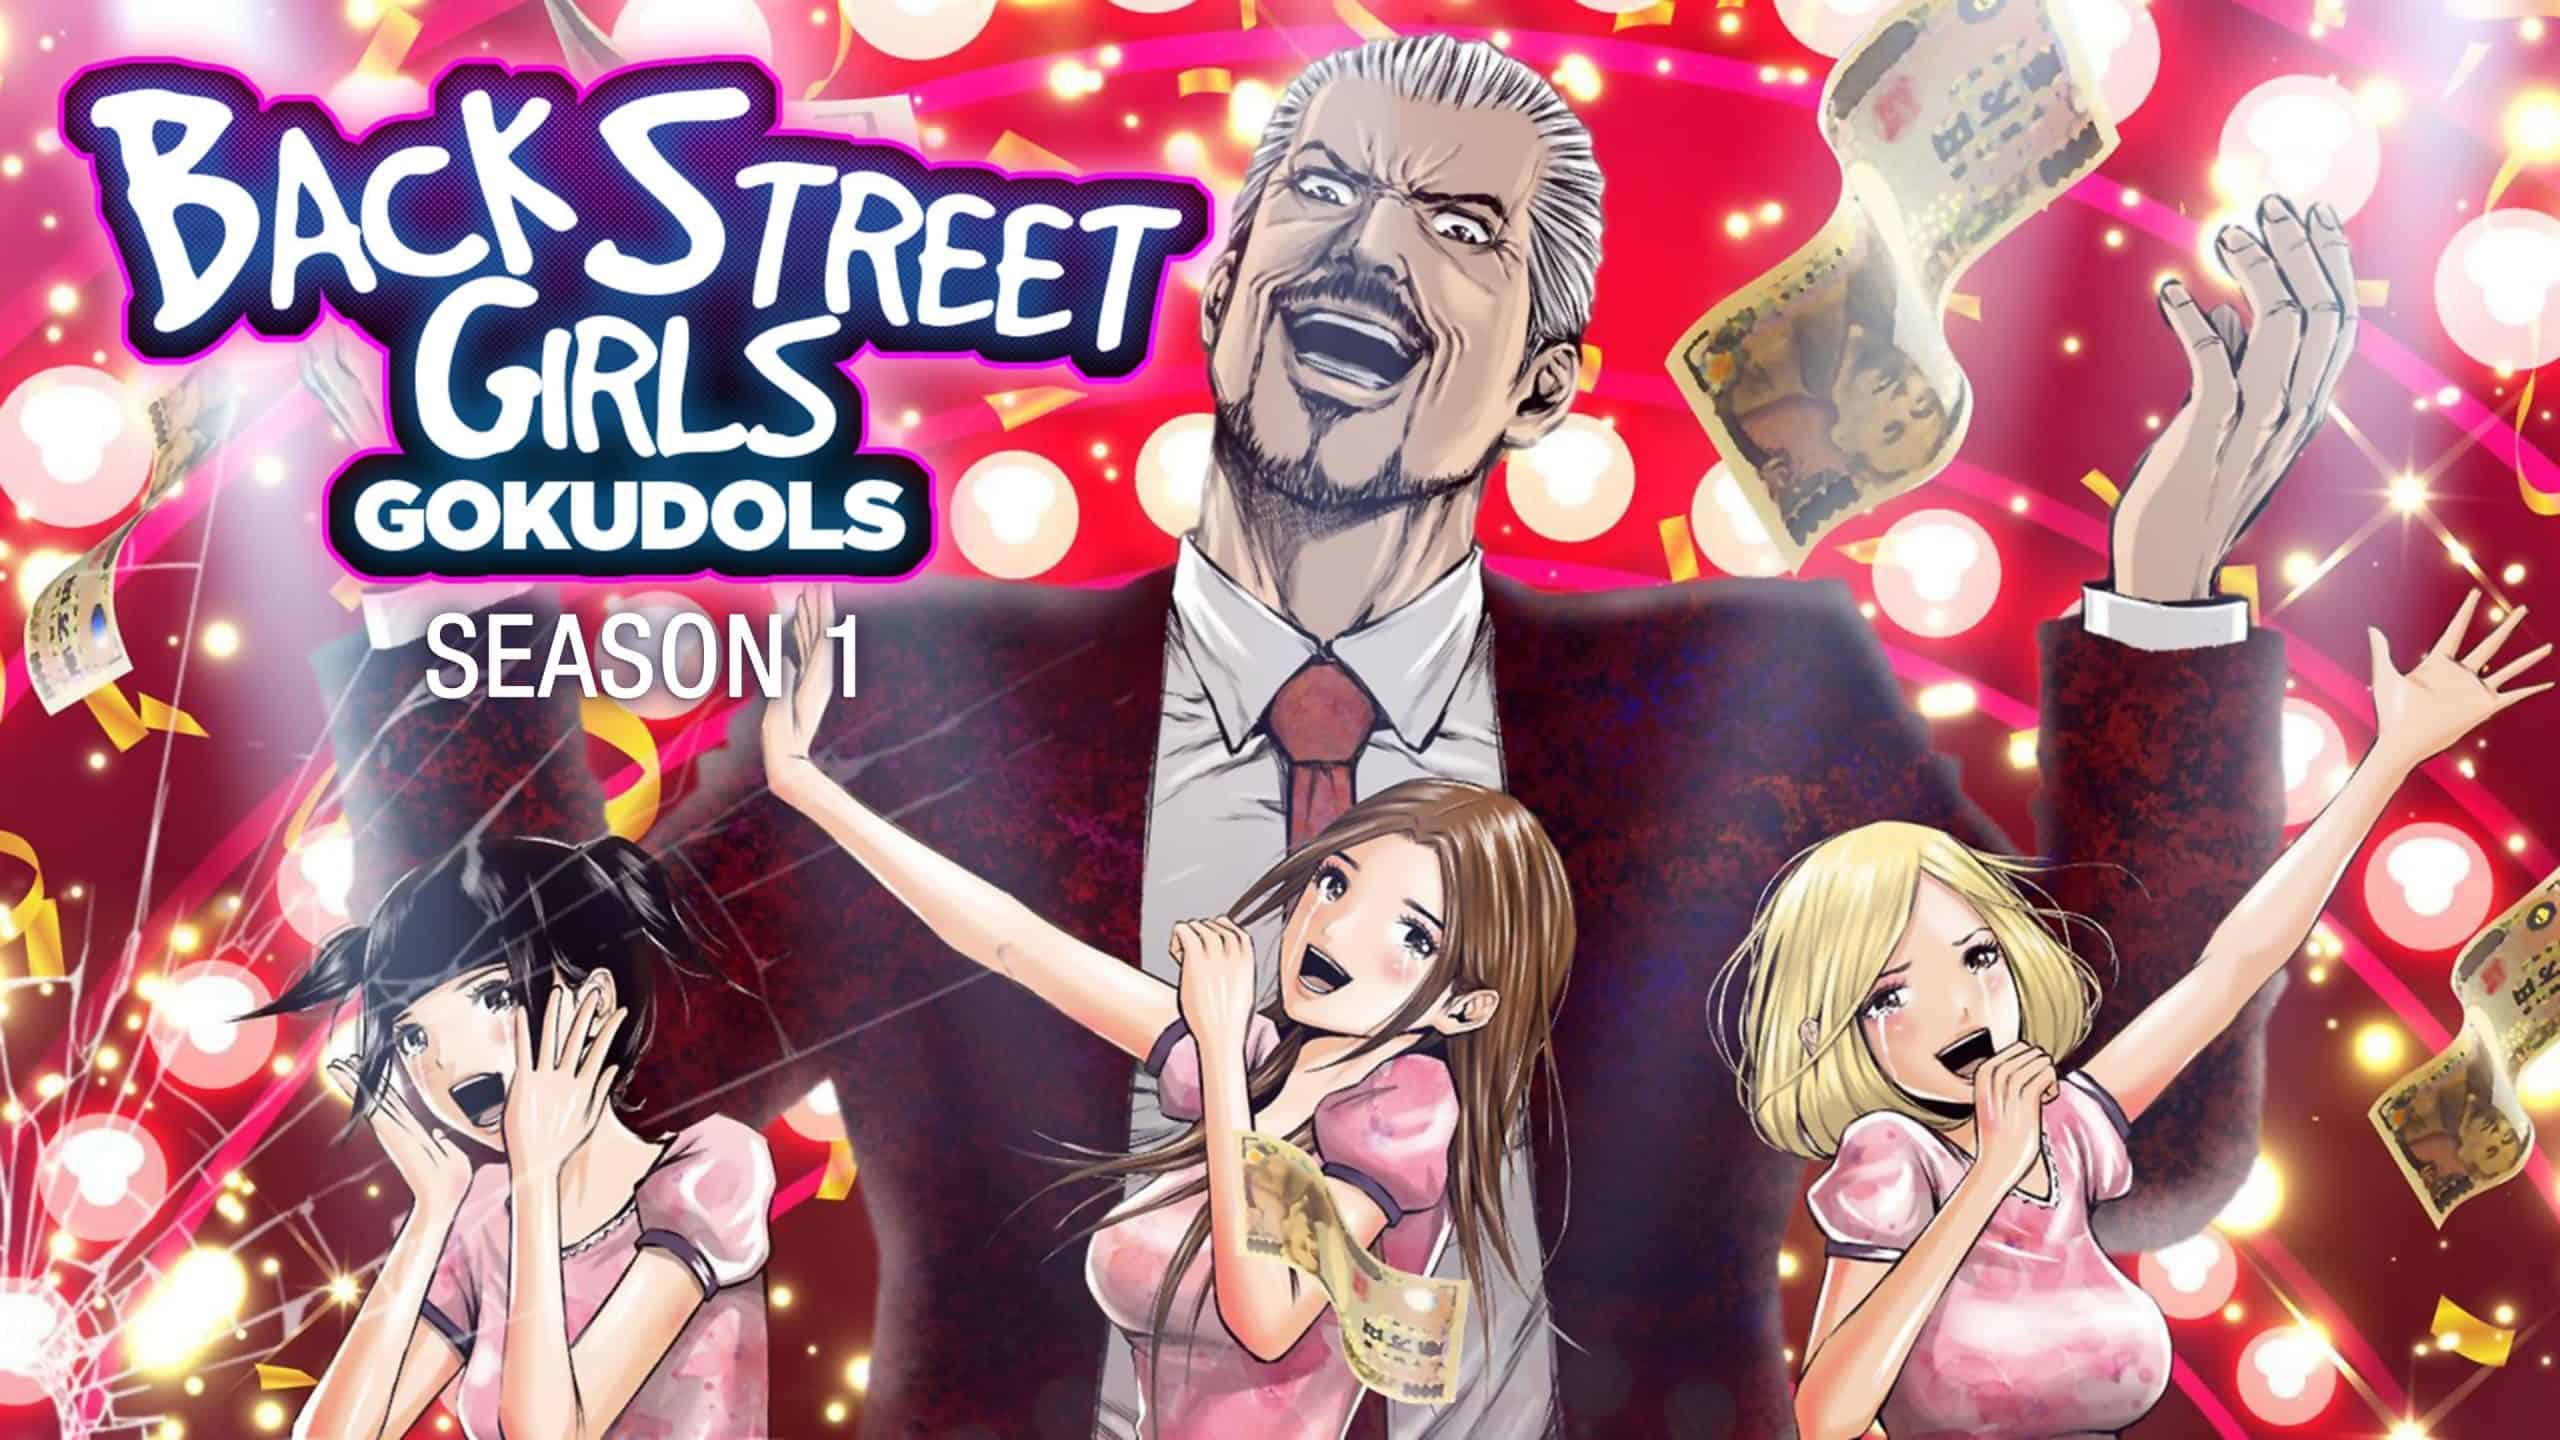 Back Street Girls GOKUDOLS